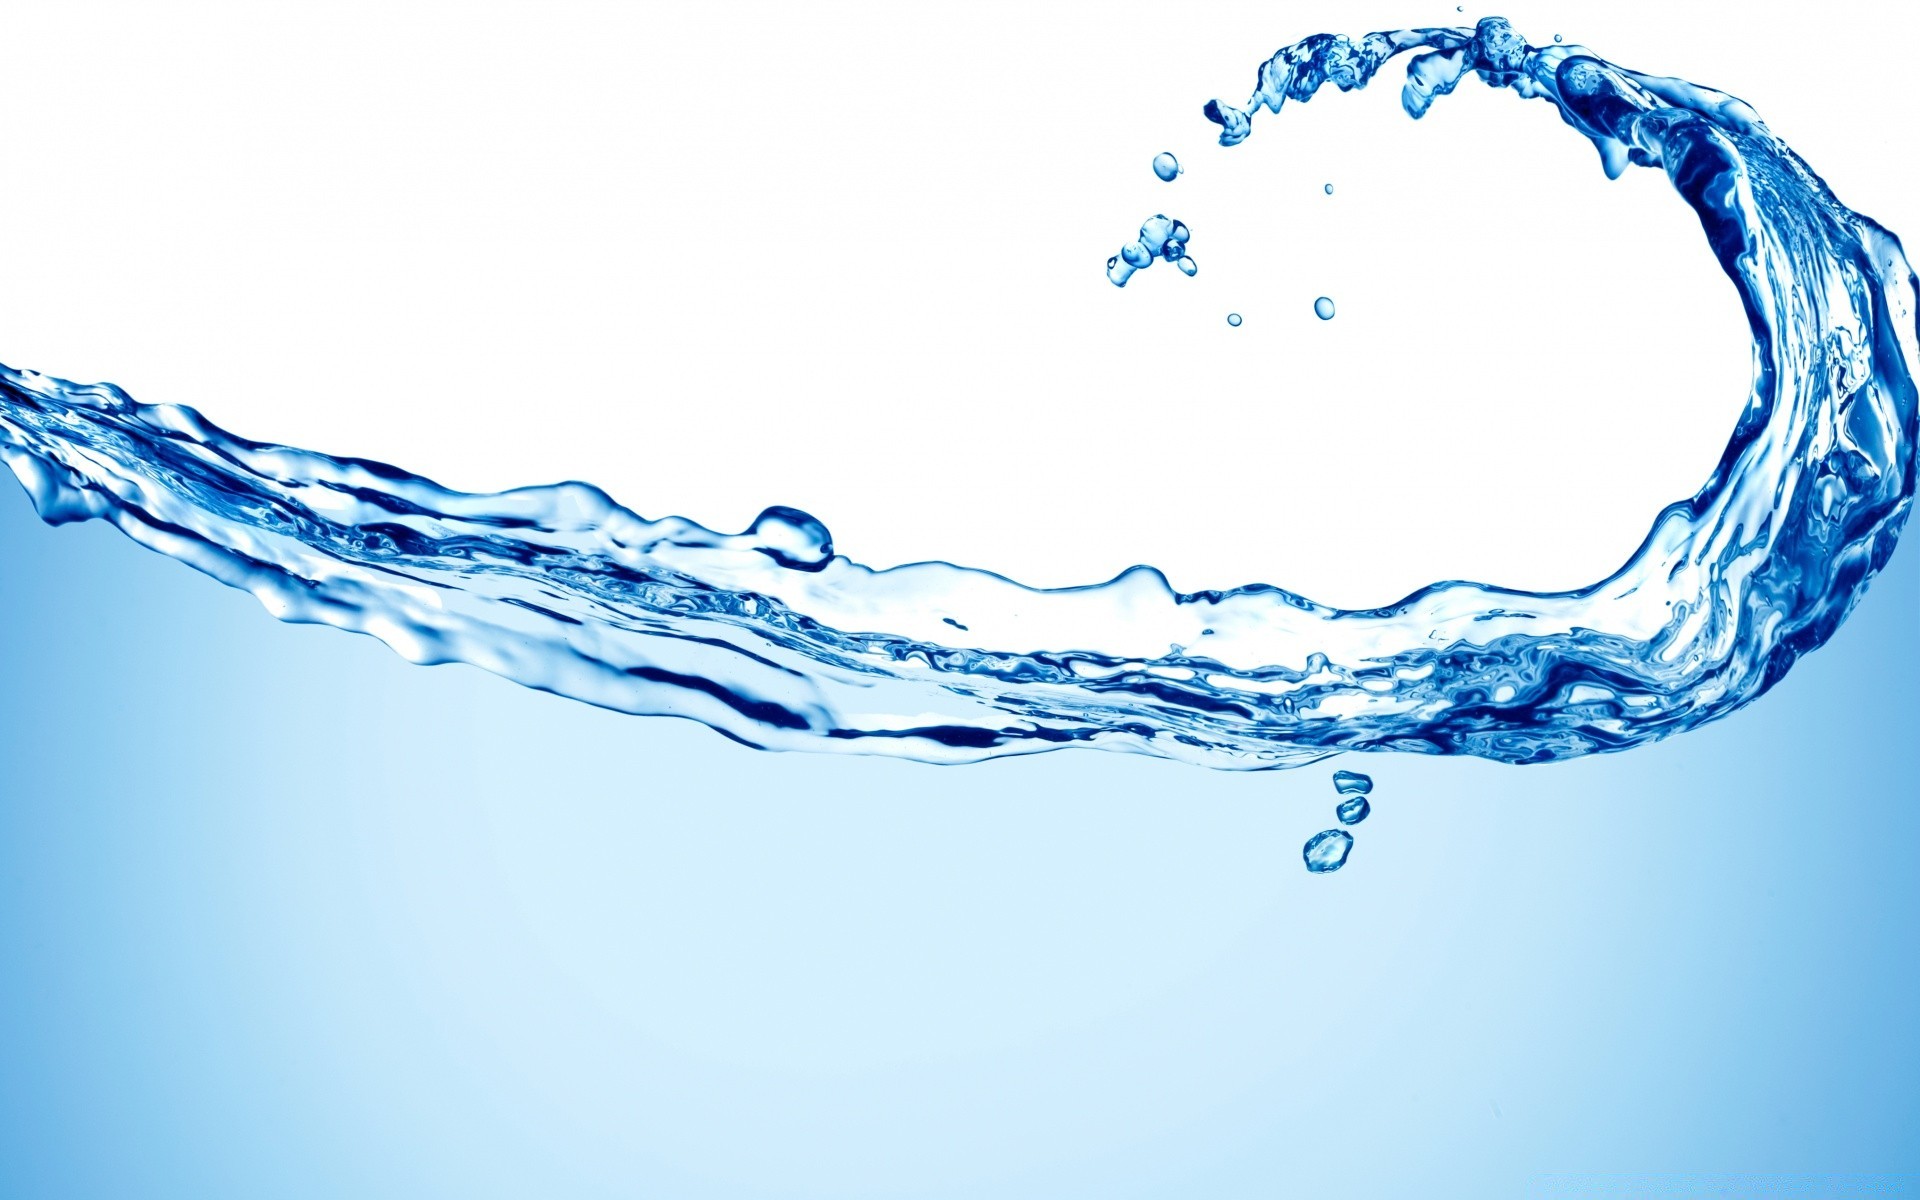 белое чистота мокрый всплеск поток пульсация понятно падение движения пузырь чистые жидкость волна гладкая жажда капли ванна чисто подводный воды бирюза